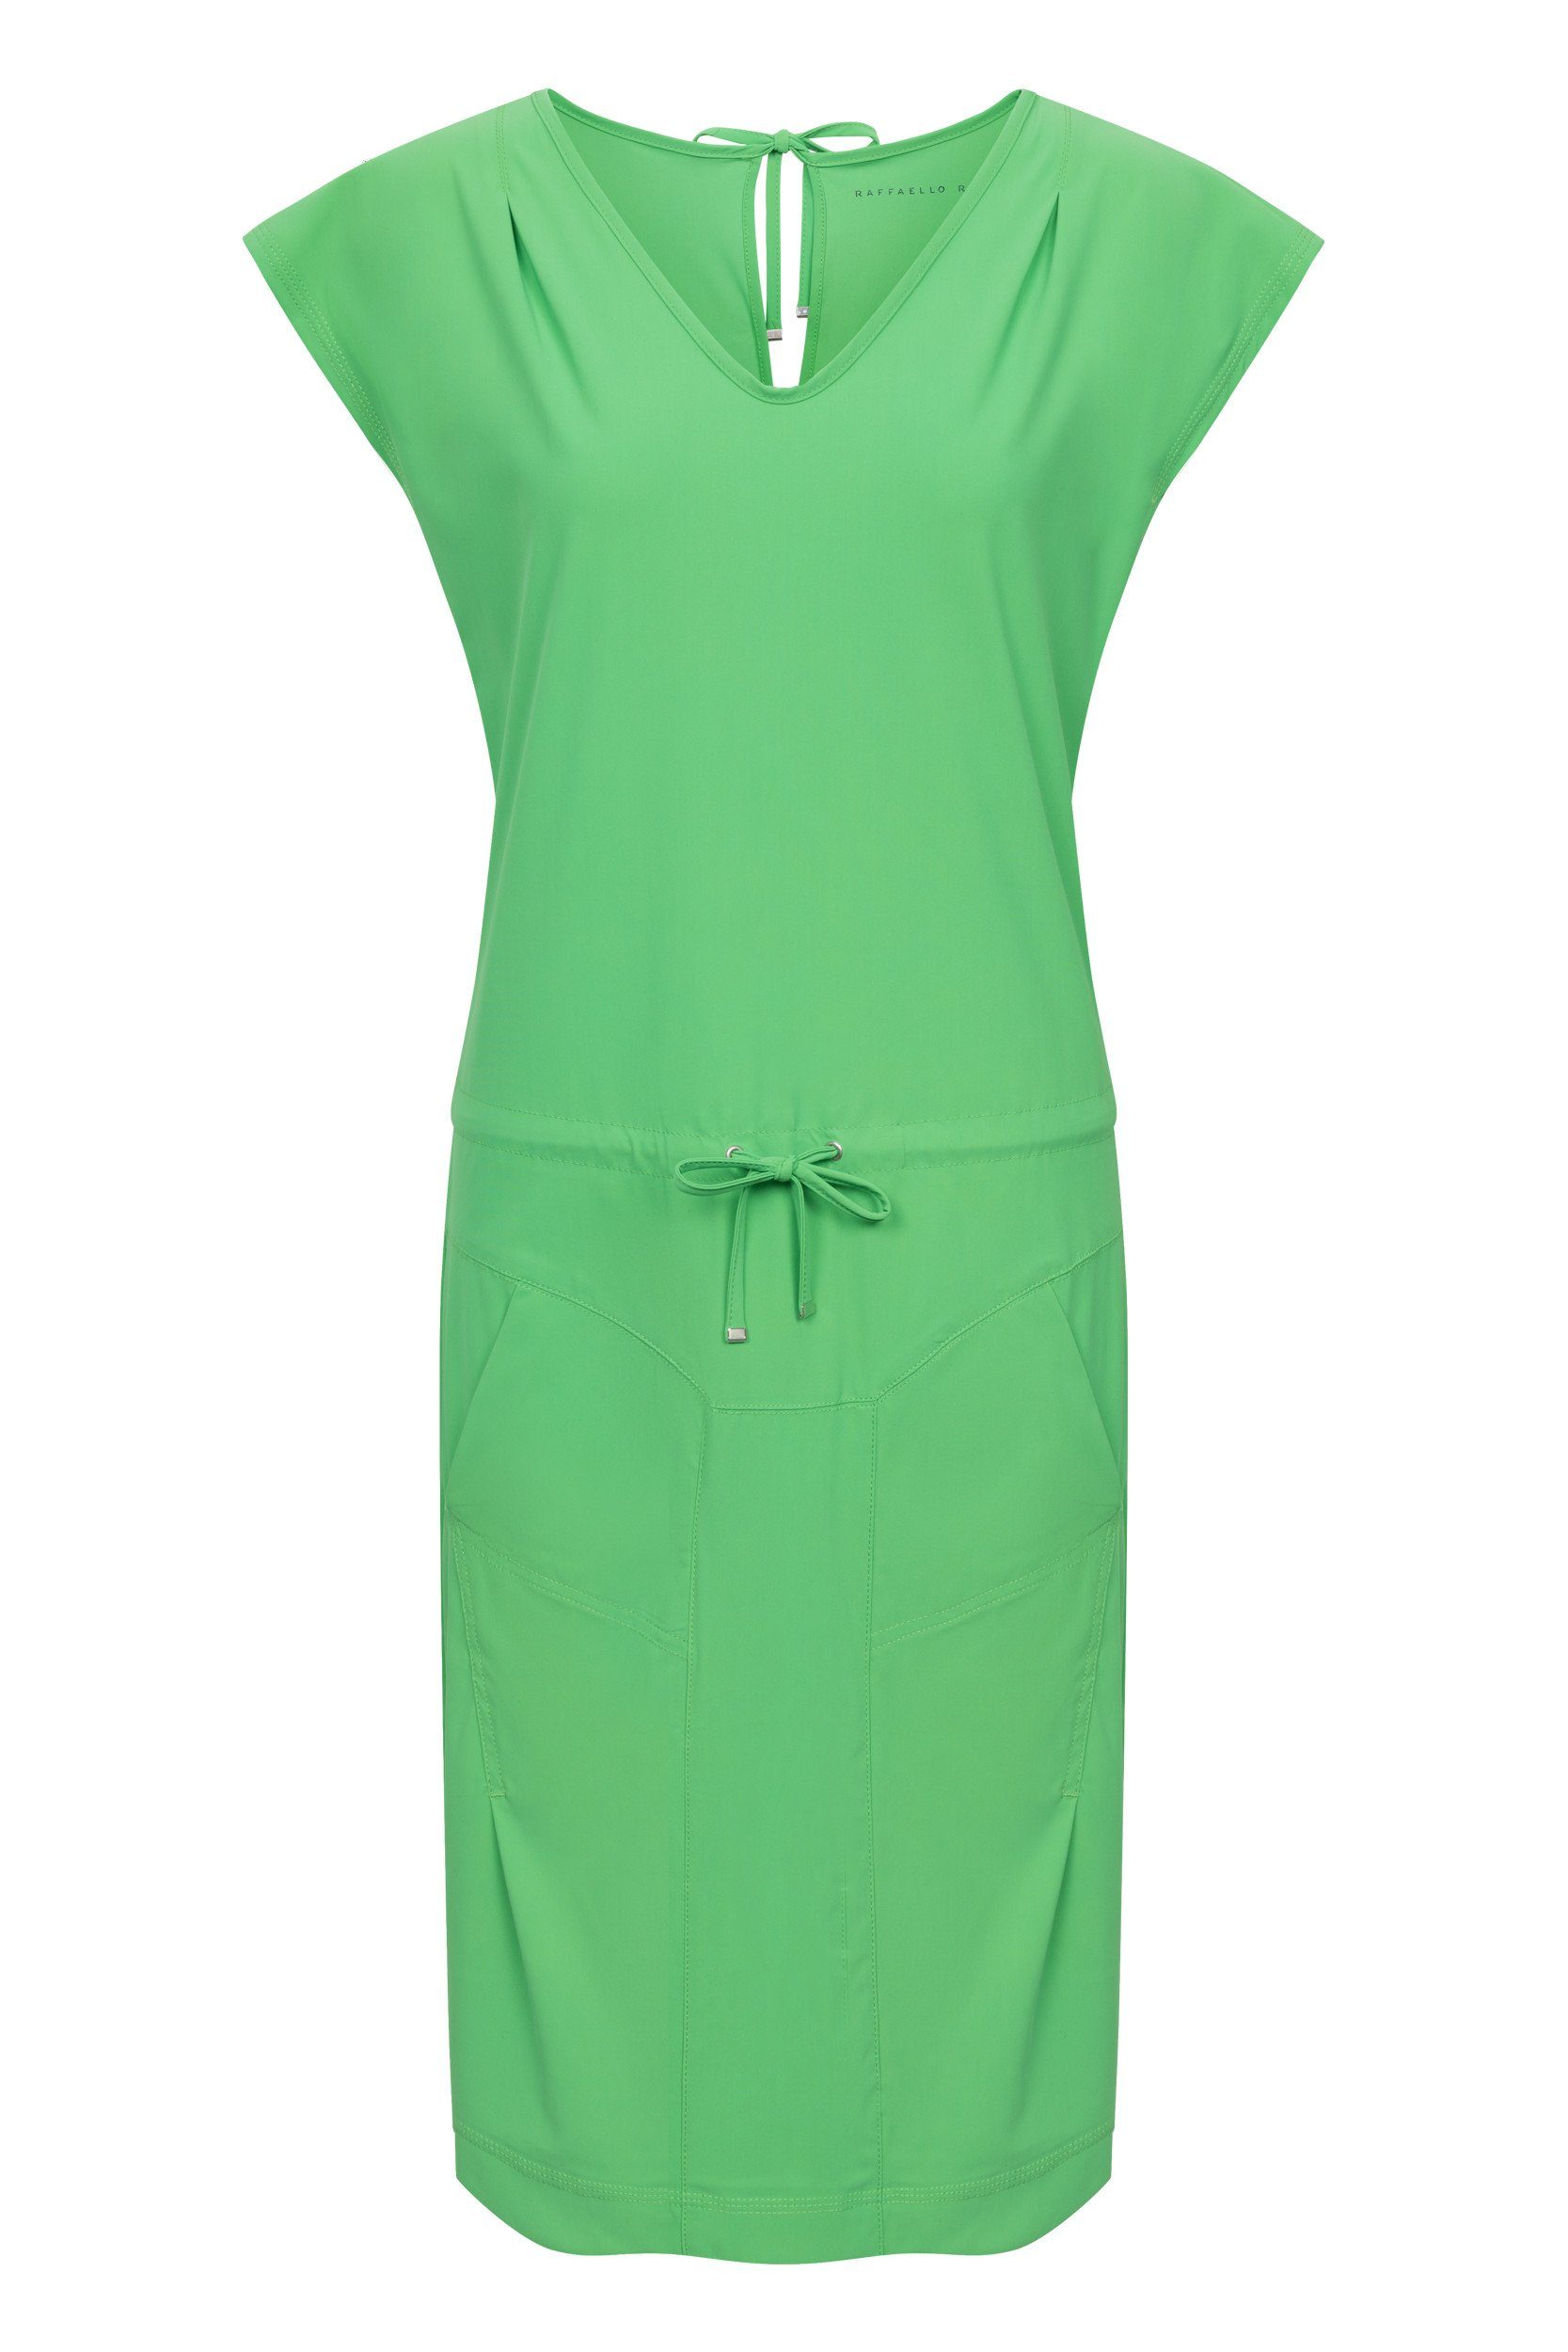 Raffaello Rossi Sommerkleid Gira Dress S Frühlingsgrün